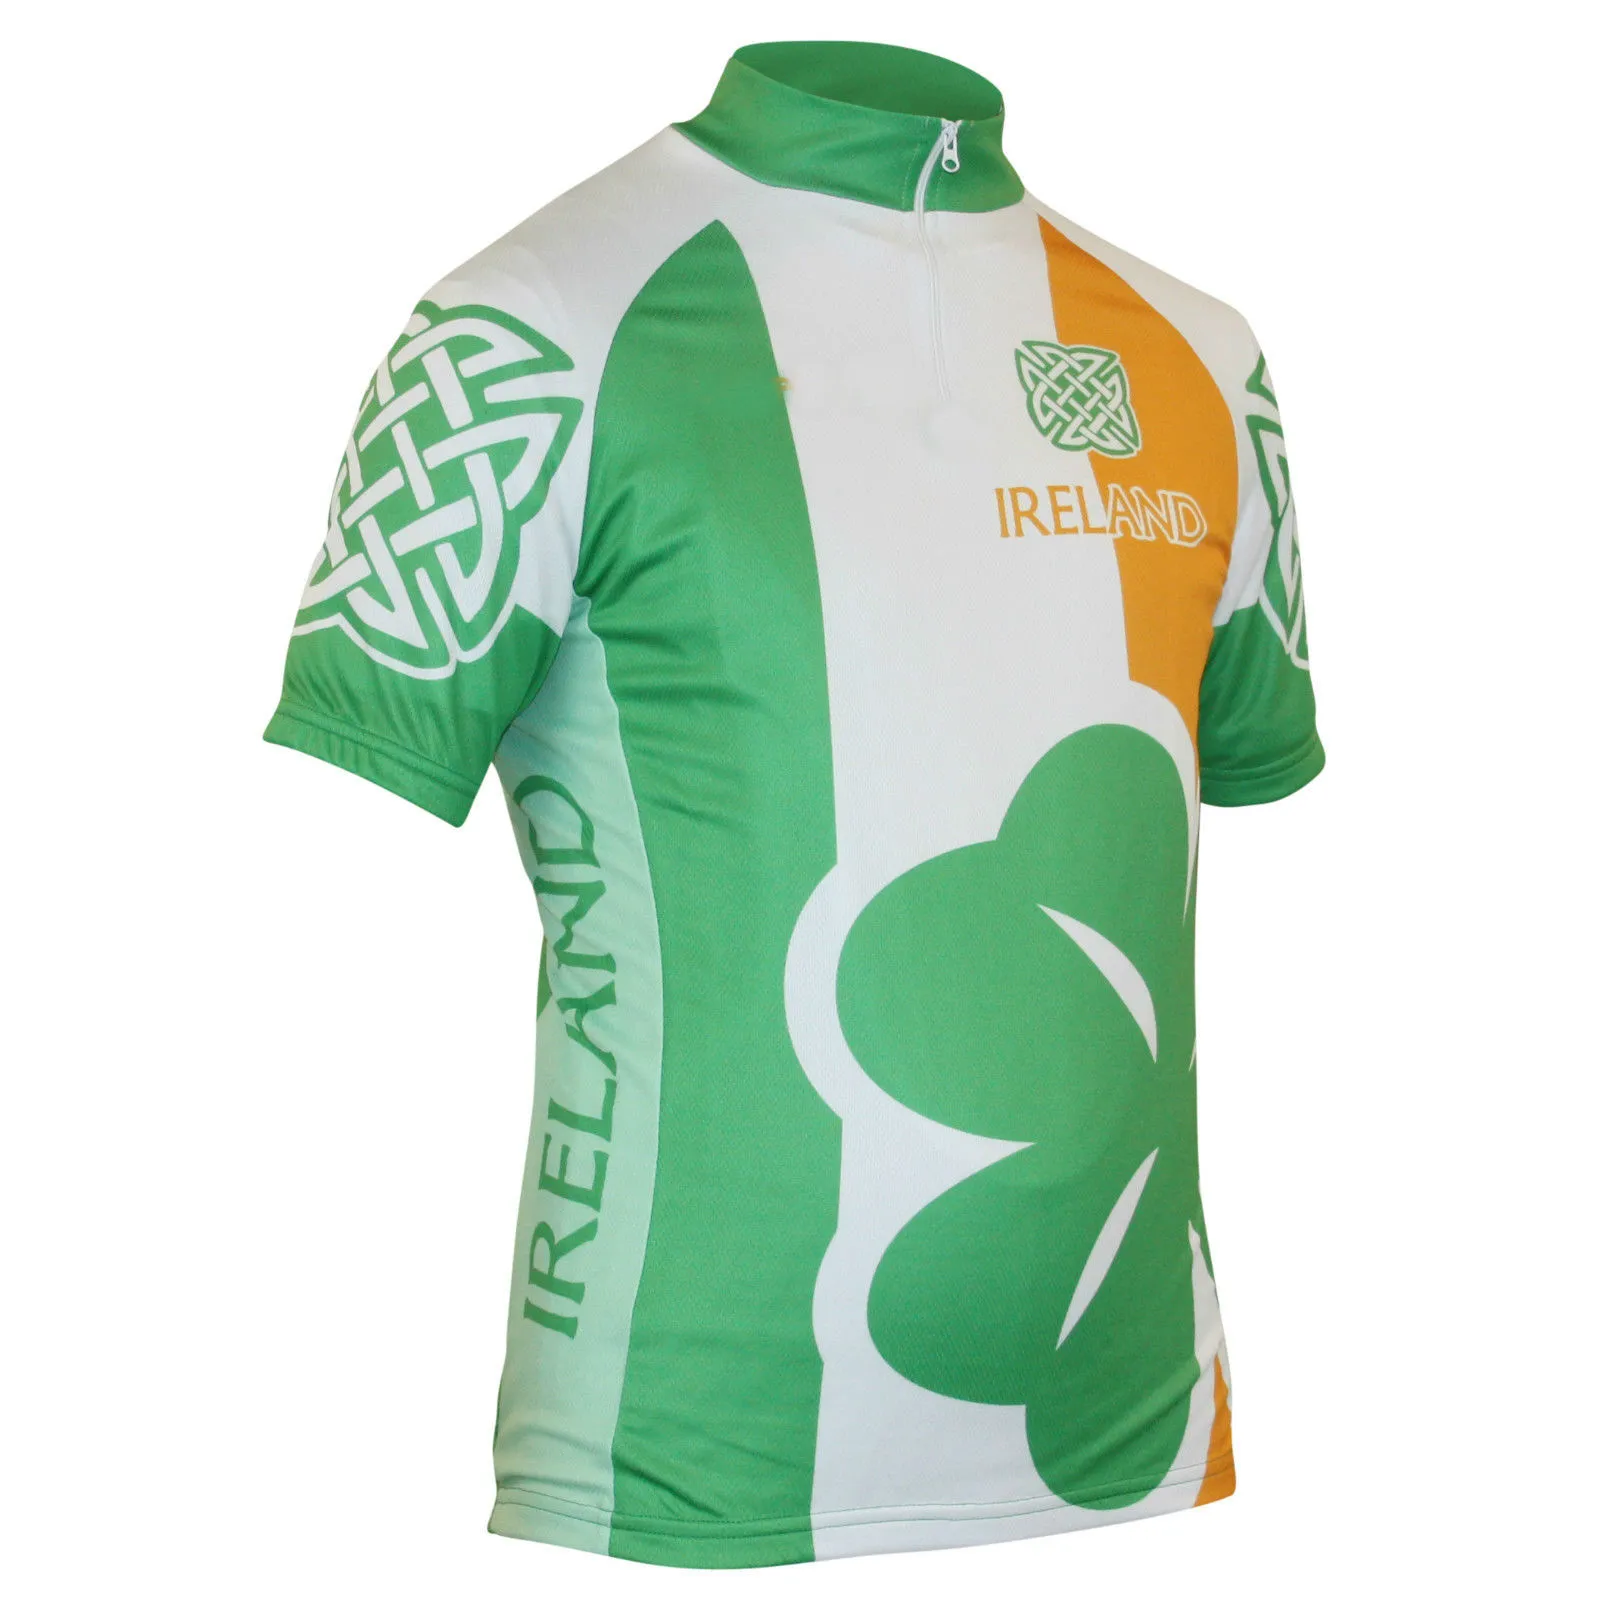 2022 National Scotland Wales Ireland w Anglii Jersey Oddychane koszulki rowerowe Krótkie rękawie Summer Szy Quick Cloth Mtb Ropa CI255F